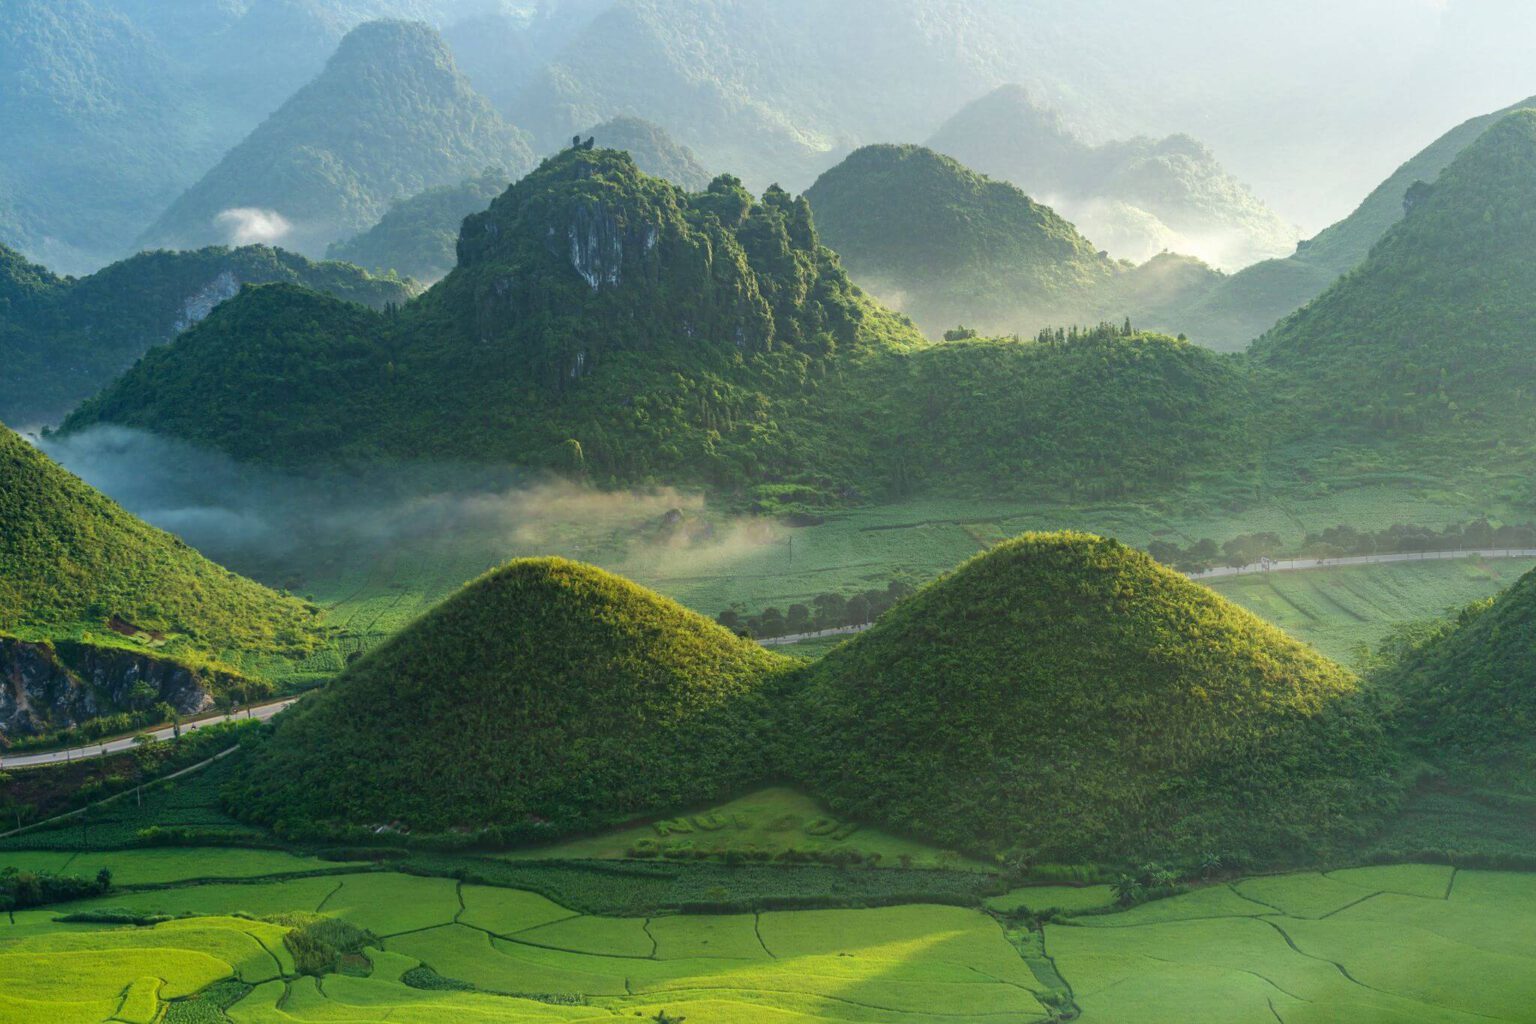 7 điểm du lịch Việt Nam sở hữu cảnh đẹp siêu thực được du khách nước ngoài công nhận không thể diễn đạt qua ảnh chụp - Ảnh 12.